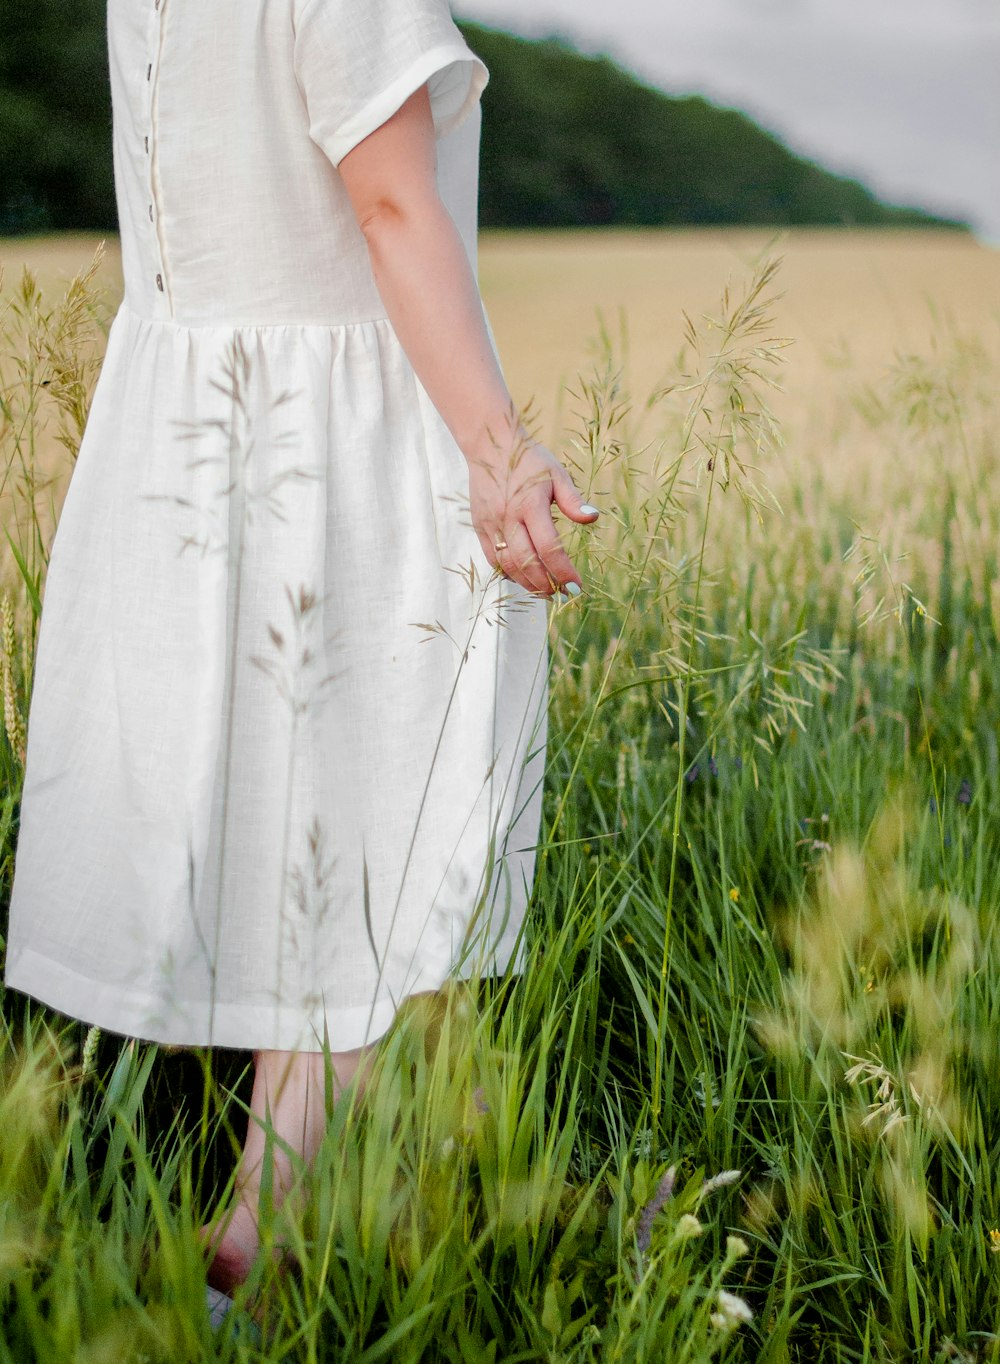 昼間、緑の芝生の上に立つ白いドレスを着た女性